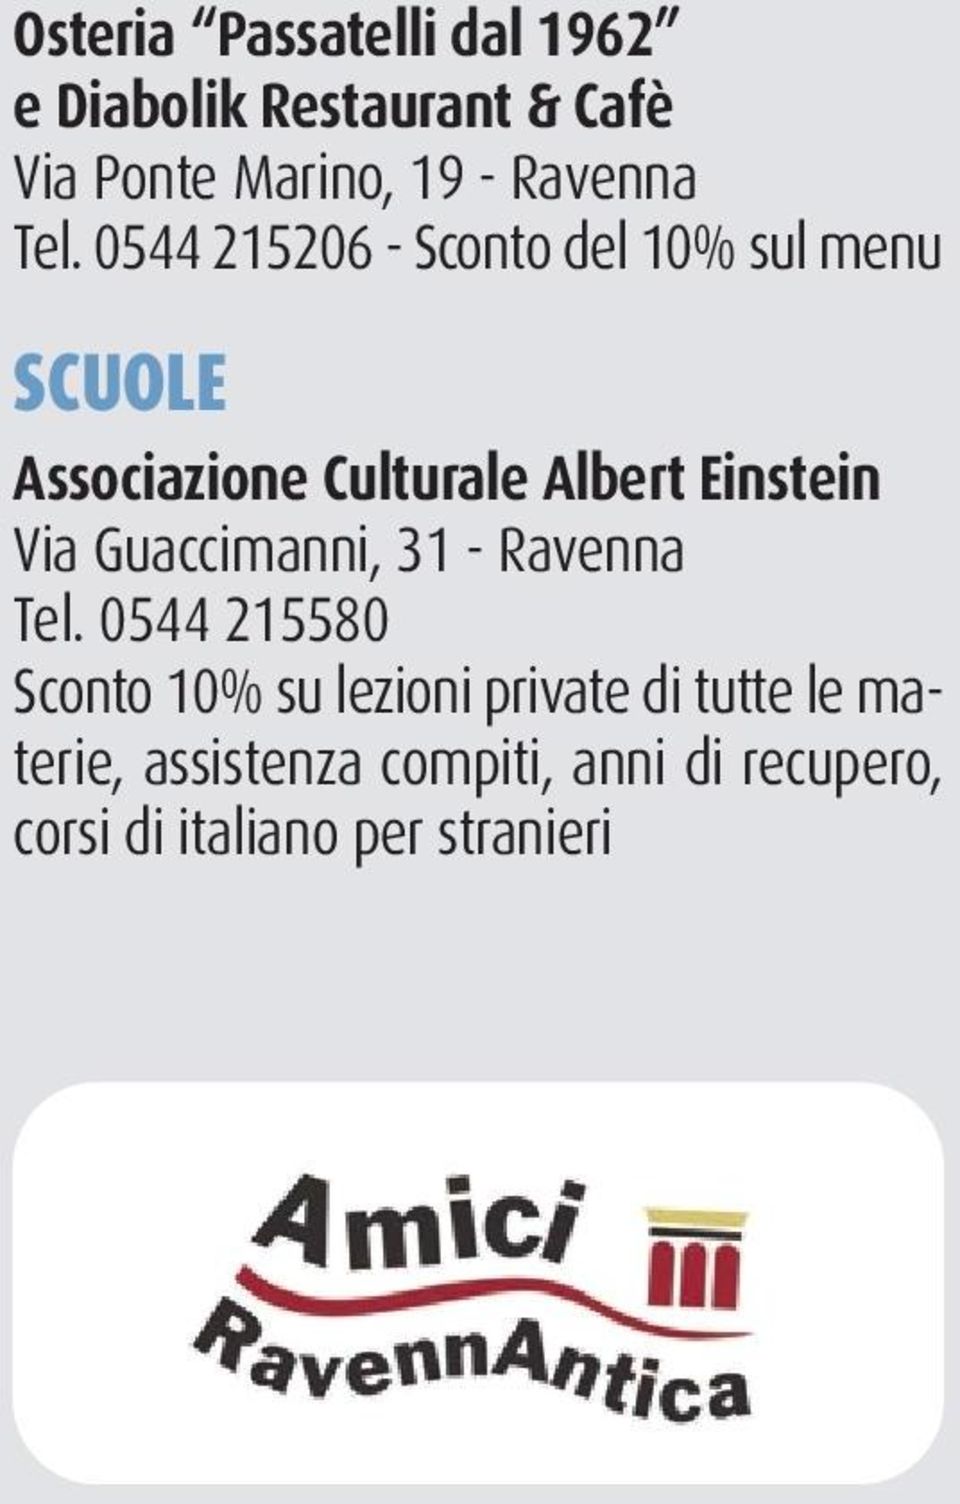 0544 215206 - Sconto del 10% sul menu SCUOLE Associazione Culturale Albert Einstein